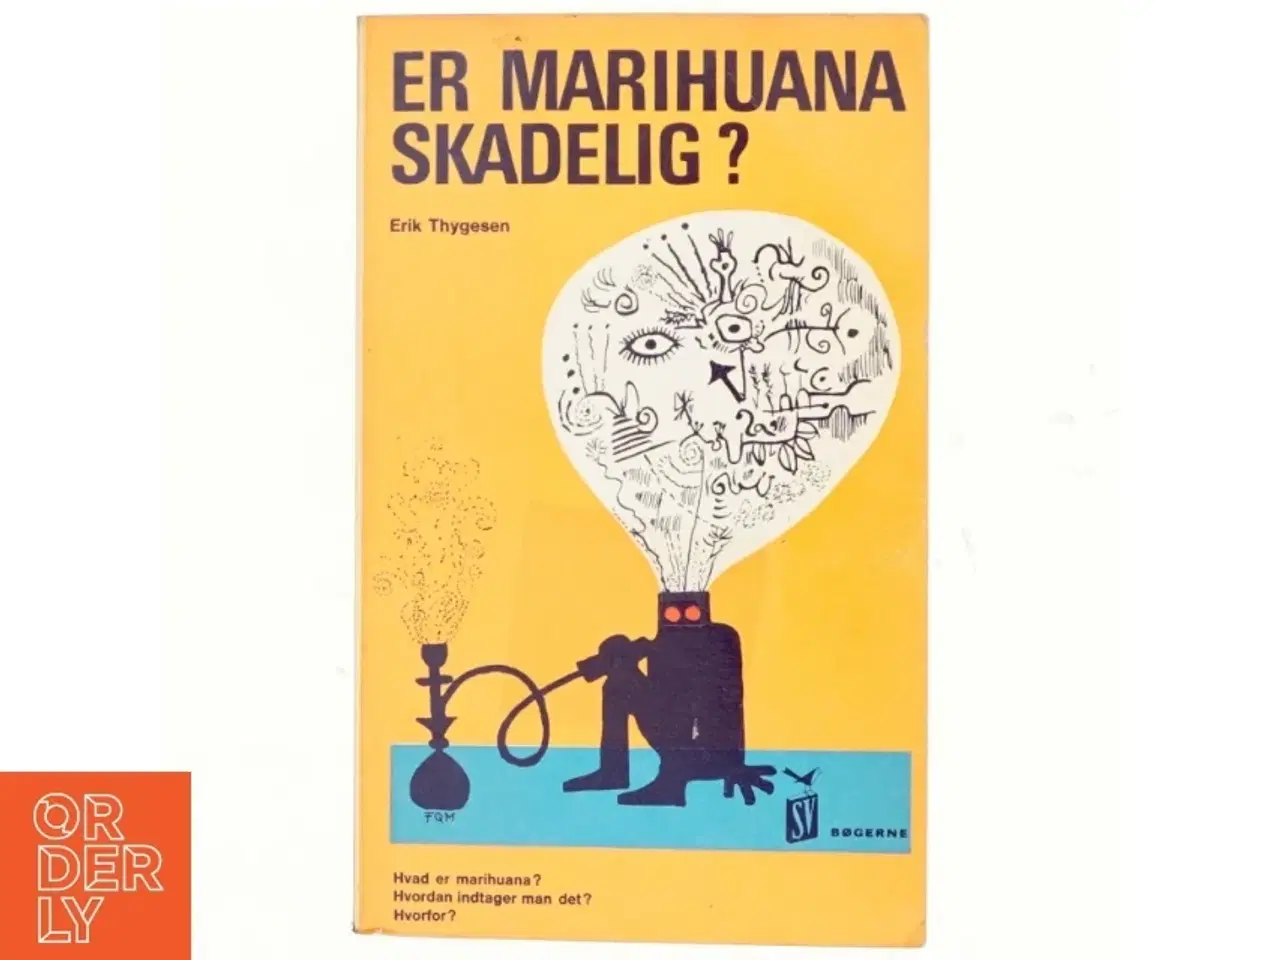 Billede 1 - Er marihuana skadelig? af Erik Thygesen (bog)